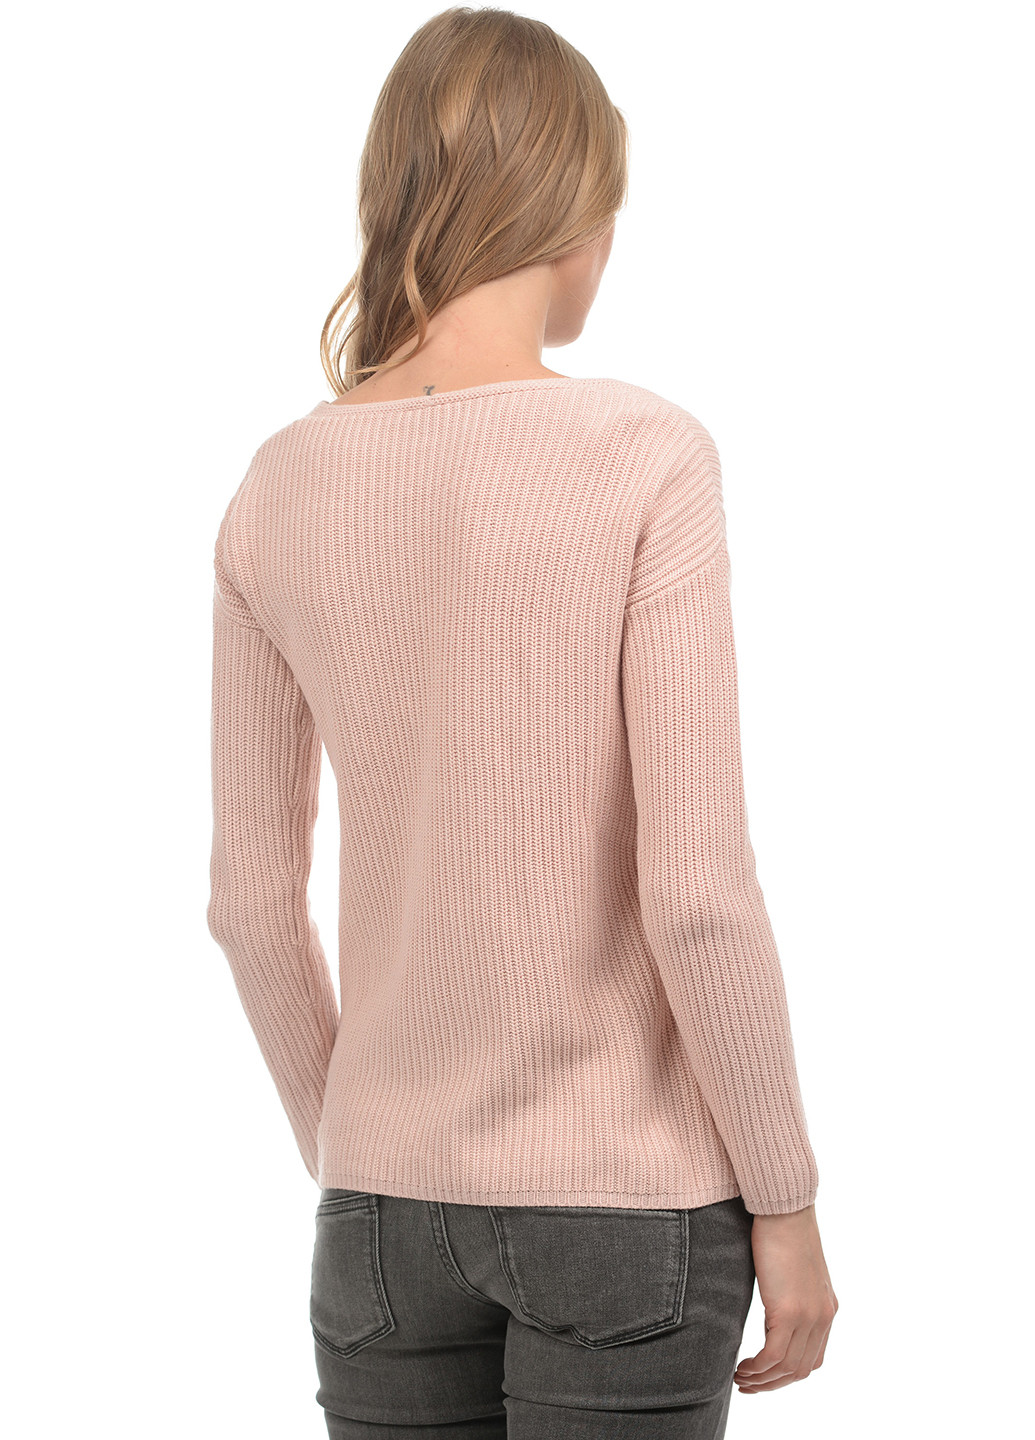 Светло-розовый демисезонный пуловер пуловер Tom Tailor